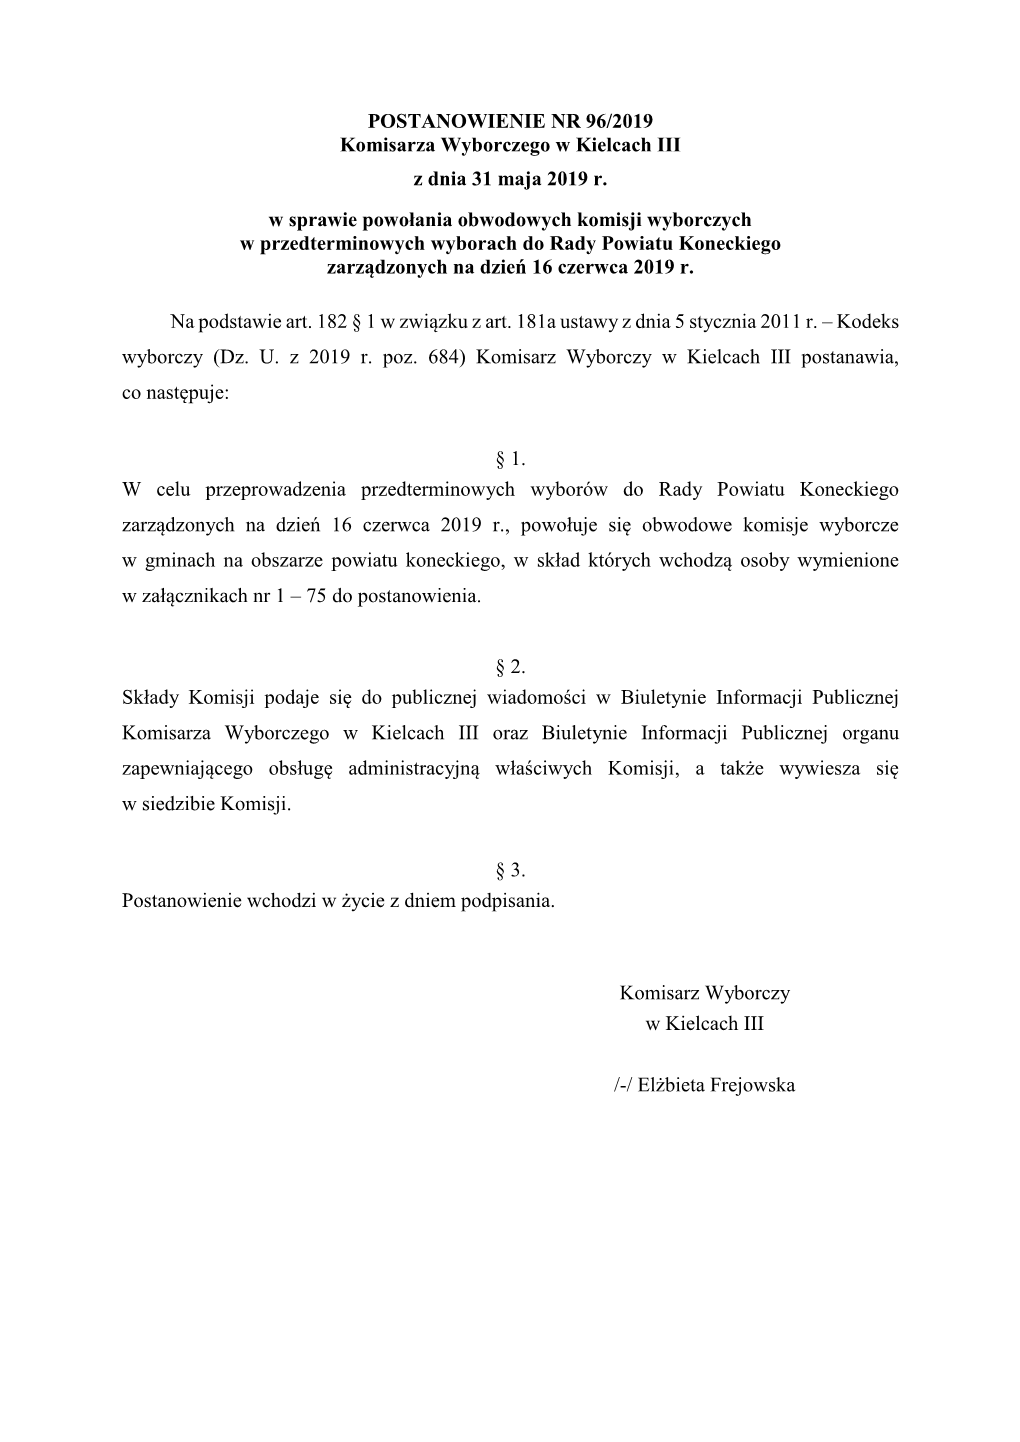 POSTANOWIENIE NR 96/2019 Komisarza Wyborczego W Kielcach III Z Dnia 31 Maja 2019 R